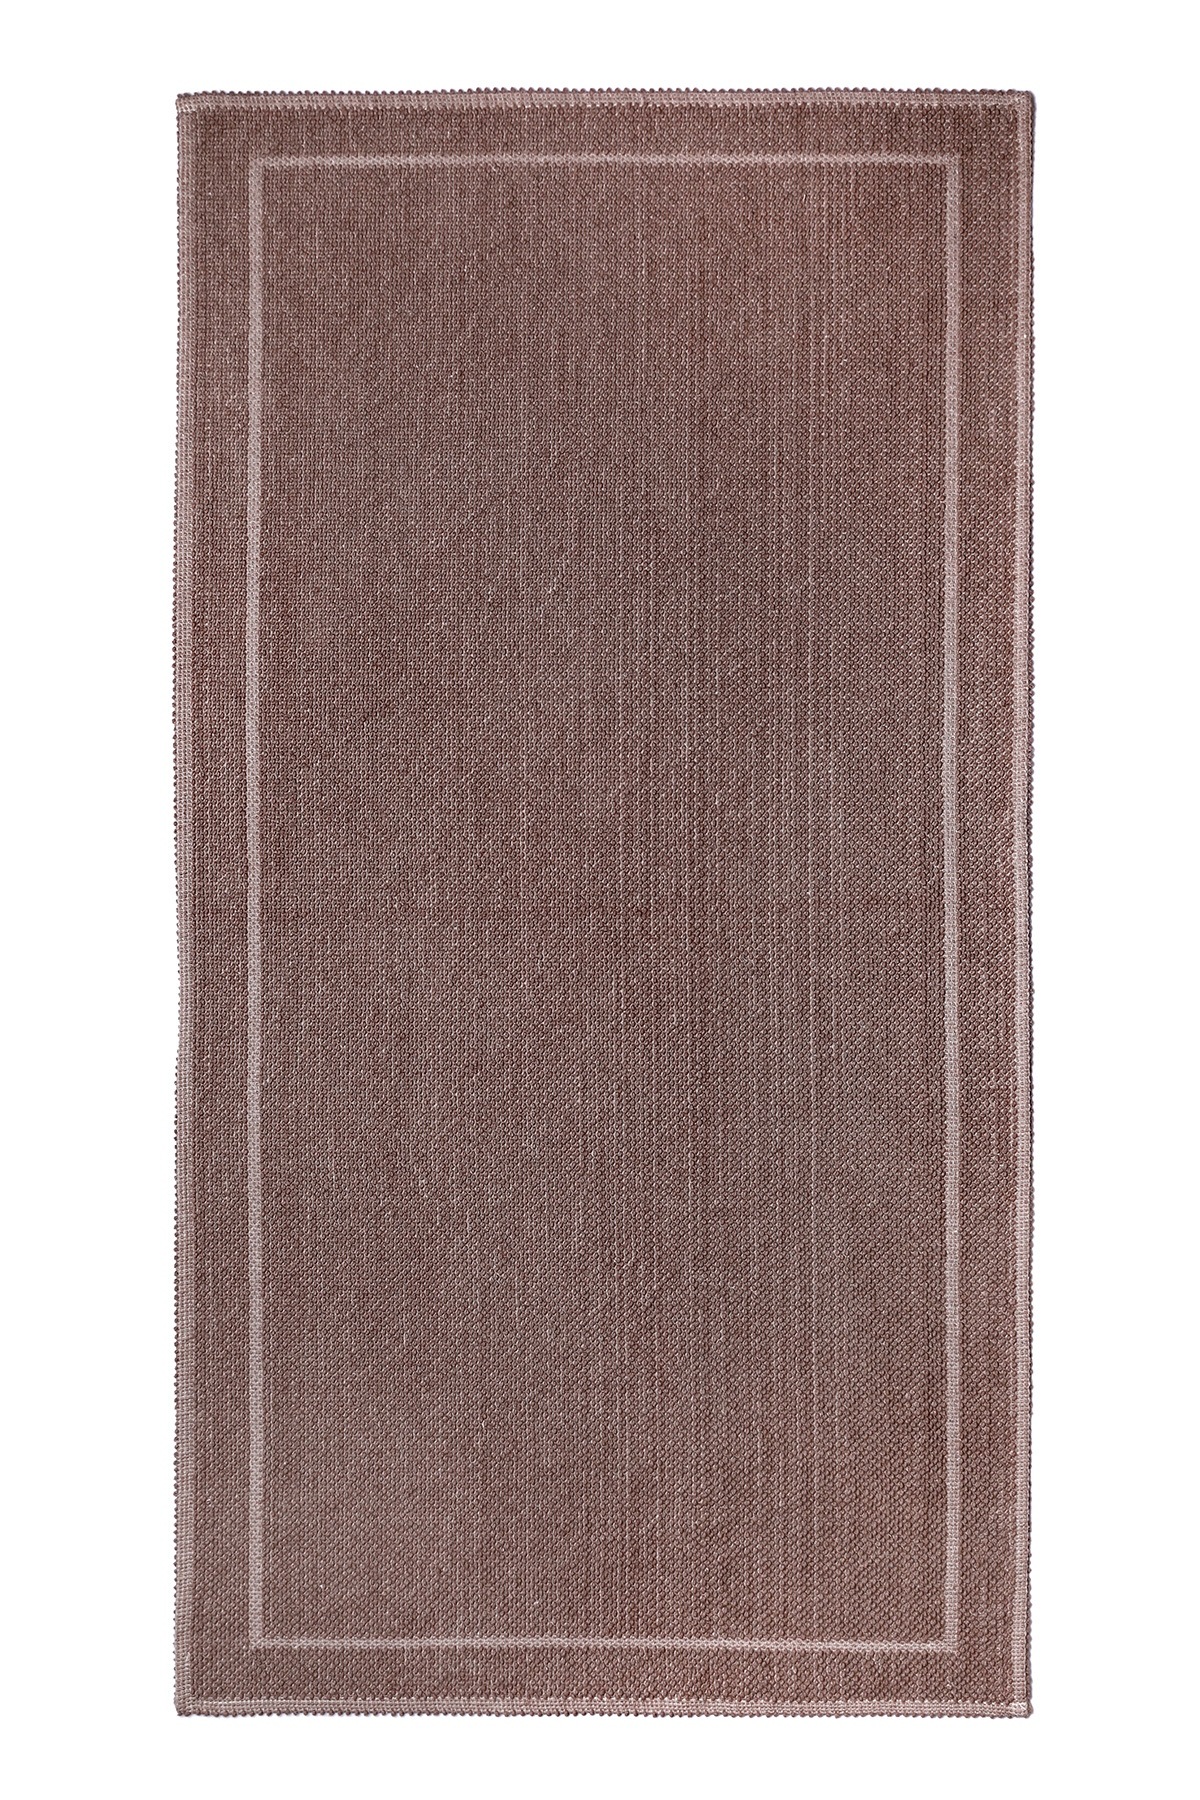 фото Коврик для ванной 60x100 см, alize, plwashed, коричневый, хлопок, plwashed-brown-60x100